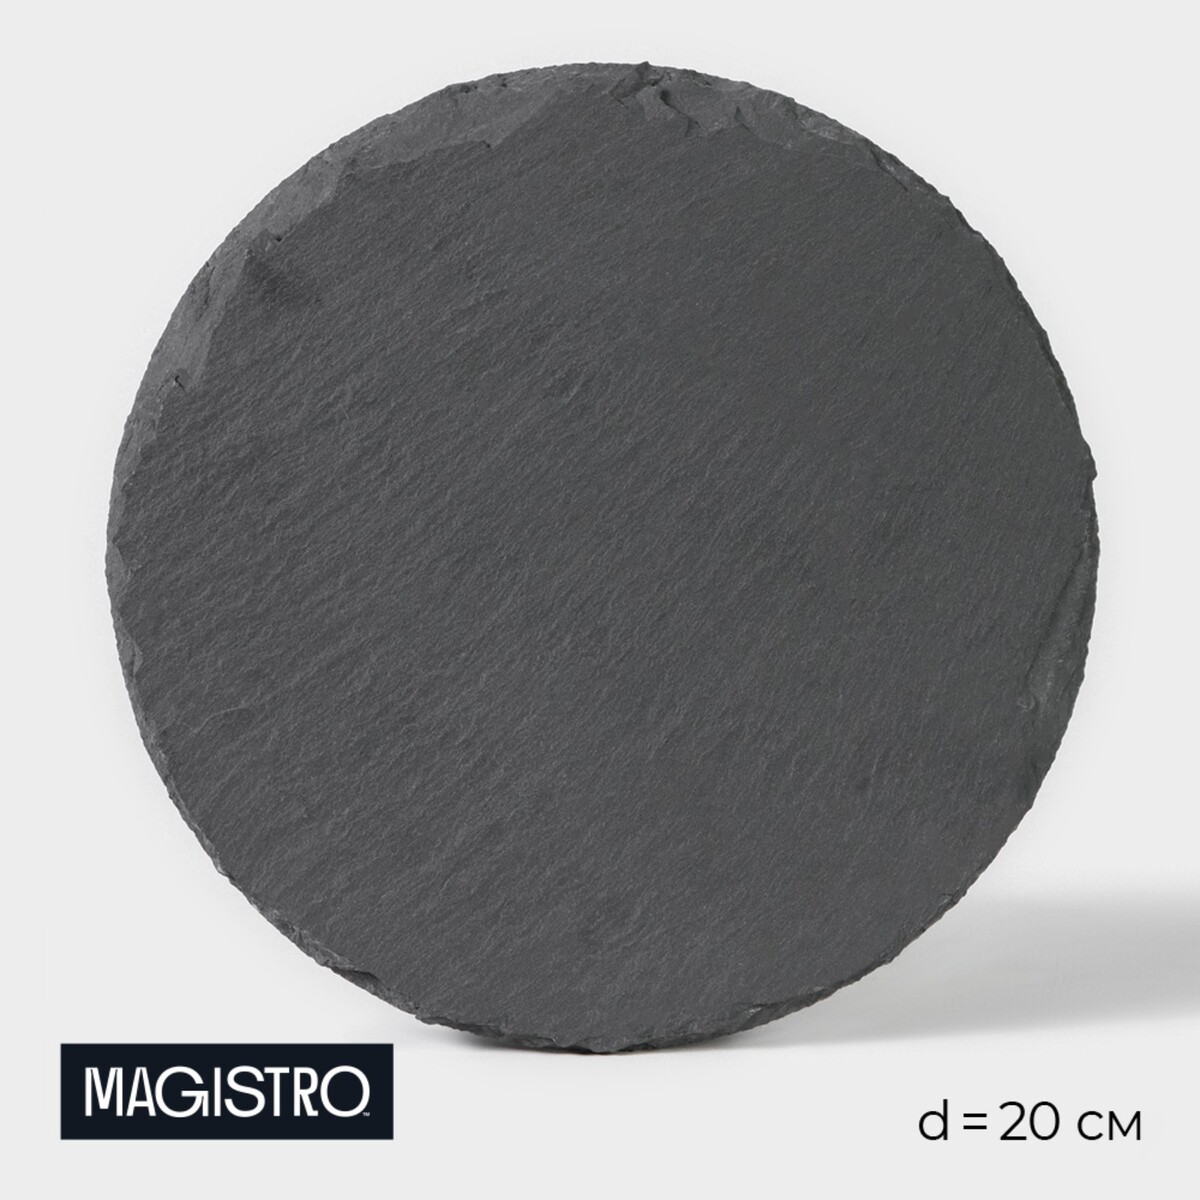 Доска для подачи из сланца magistro valley, d=20 см доска для подачи из сланца magistro valley d 30 см